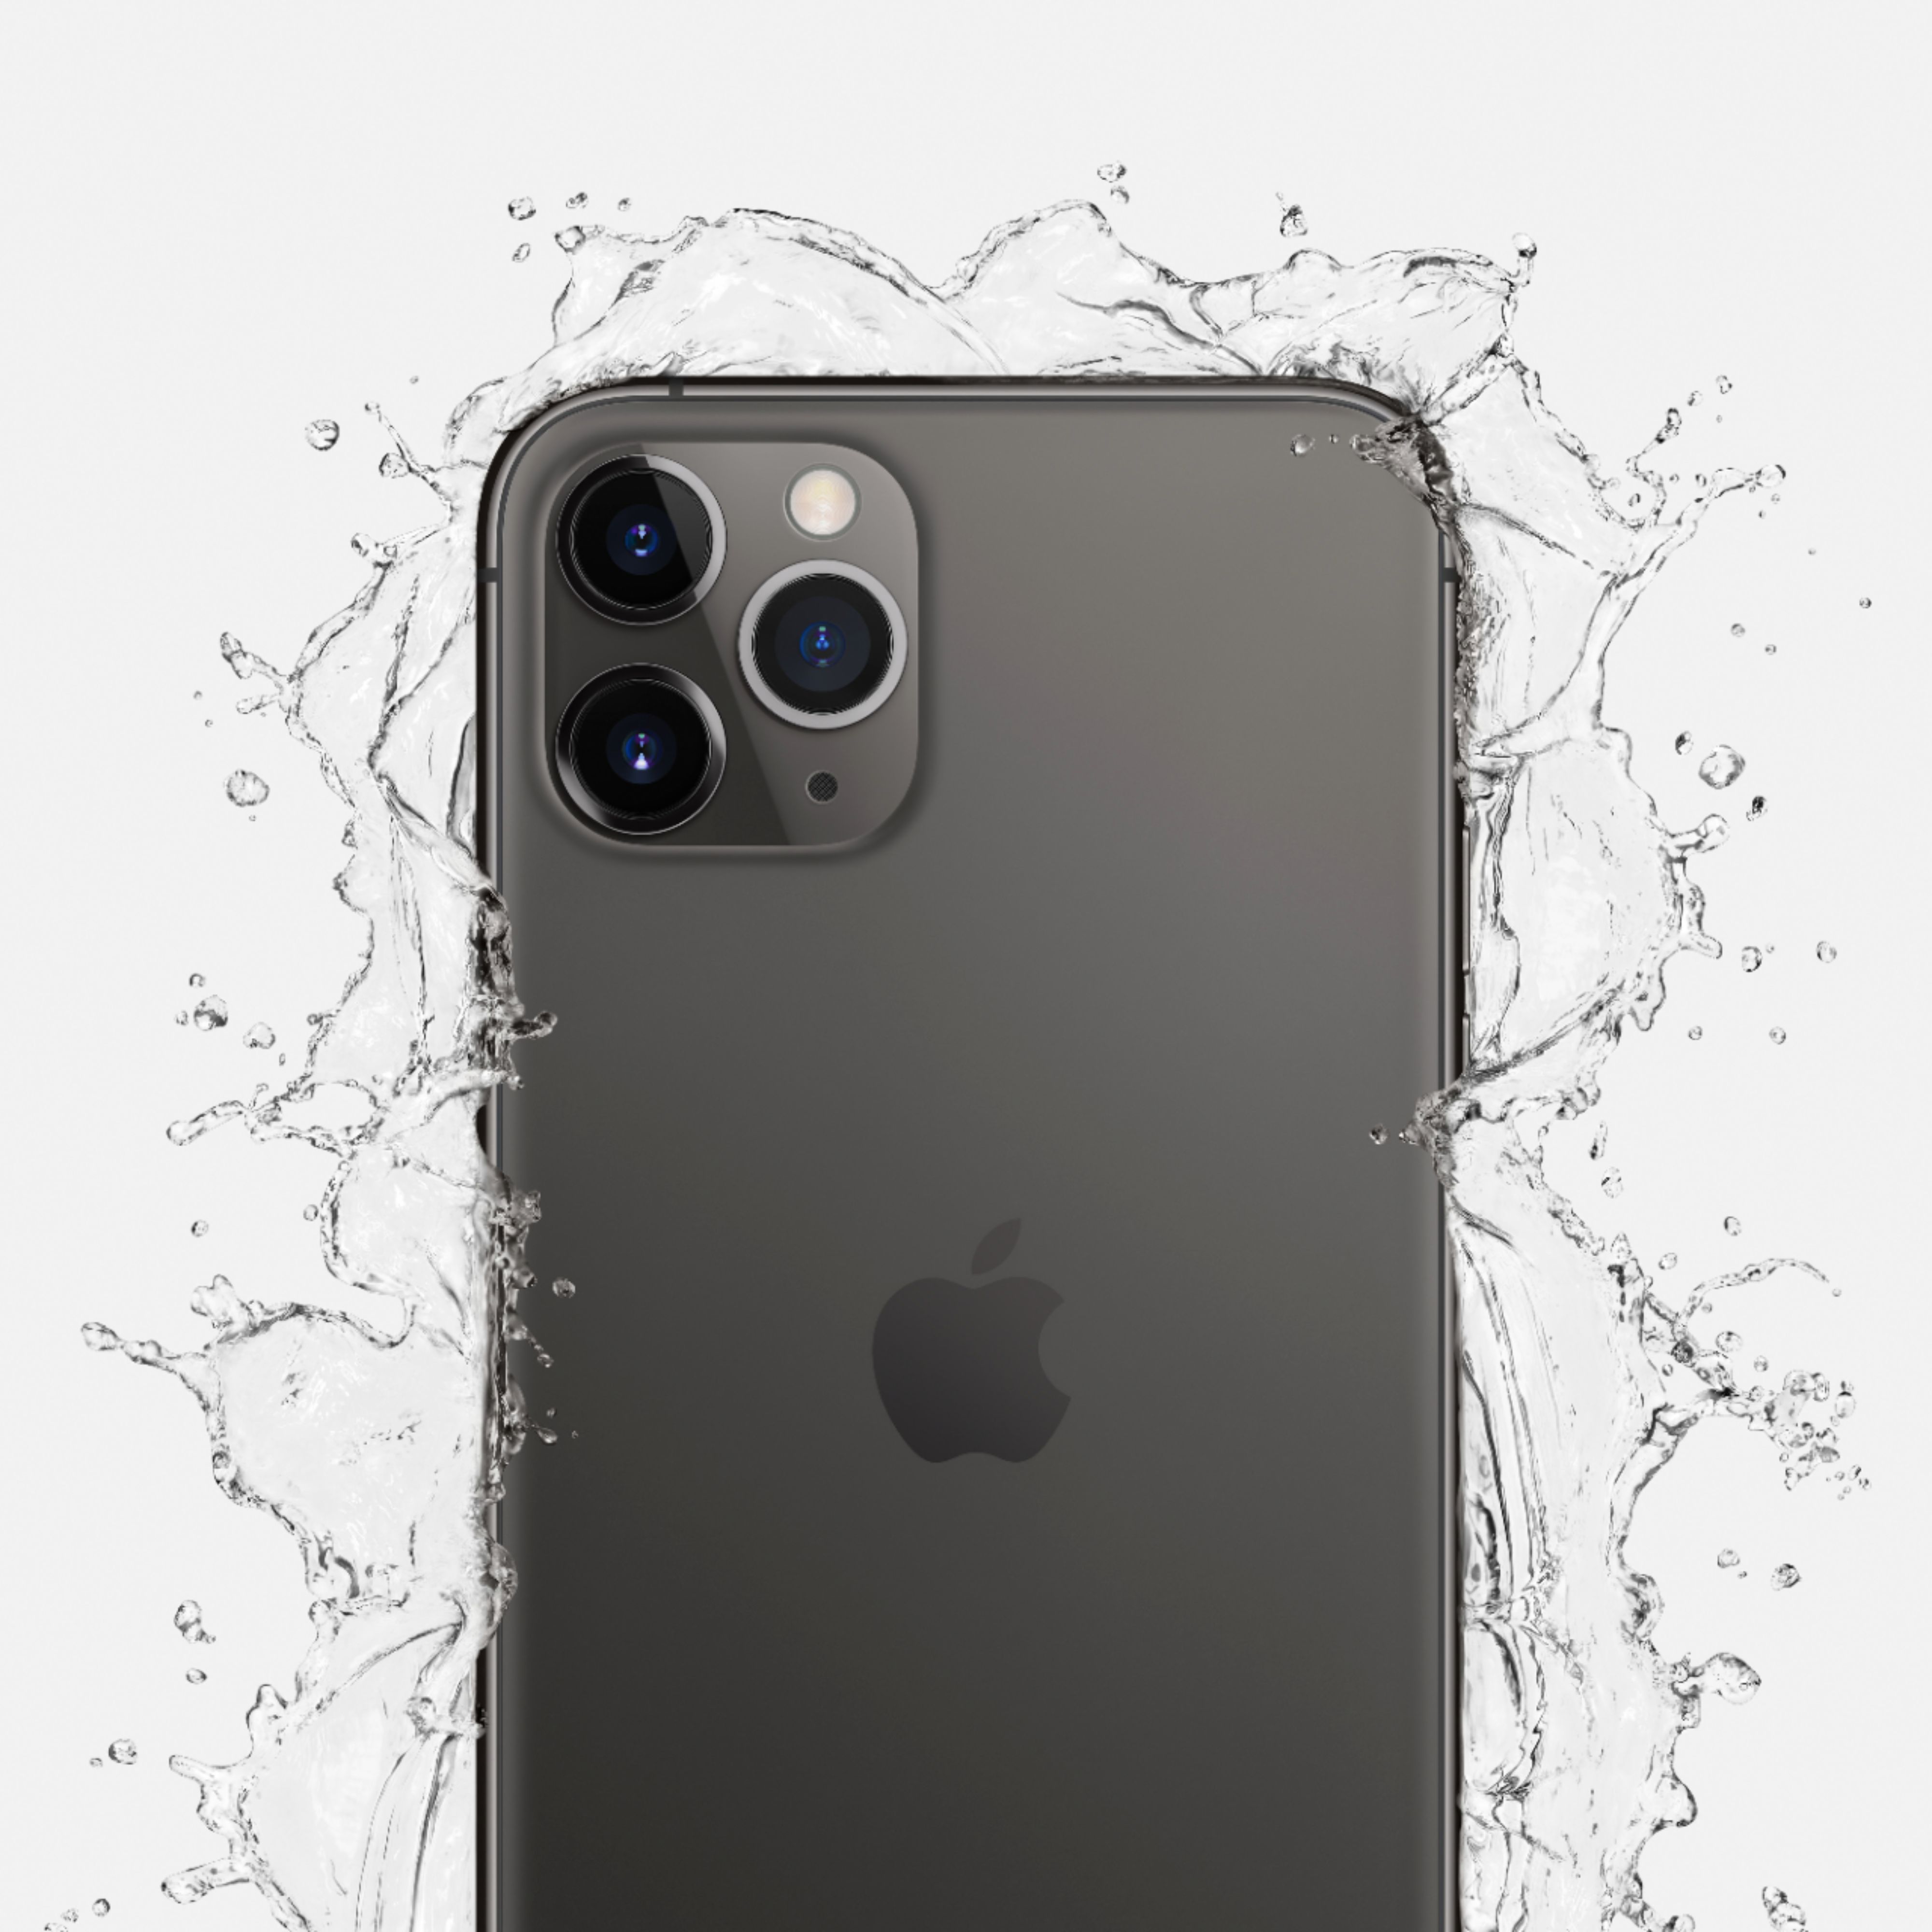 スマートフォン/携帯電話 スマートフォン本体 Best Buy: Apple iPhone 11 Pro Max 256GB Space Gray (AT&T) MWH42LL/A